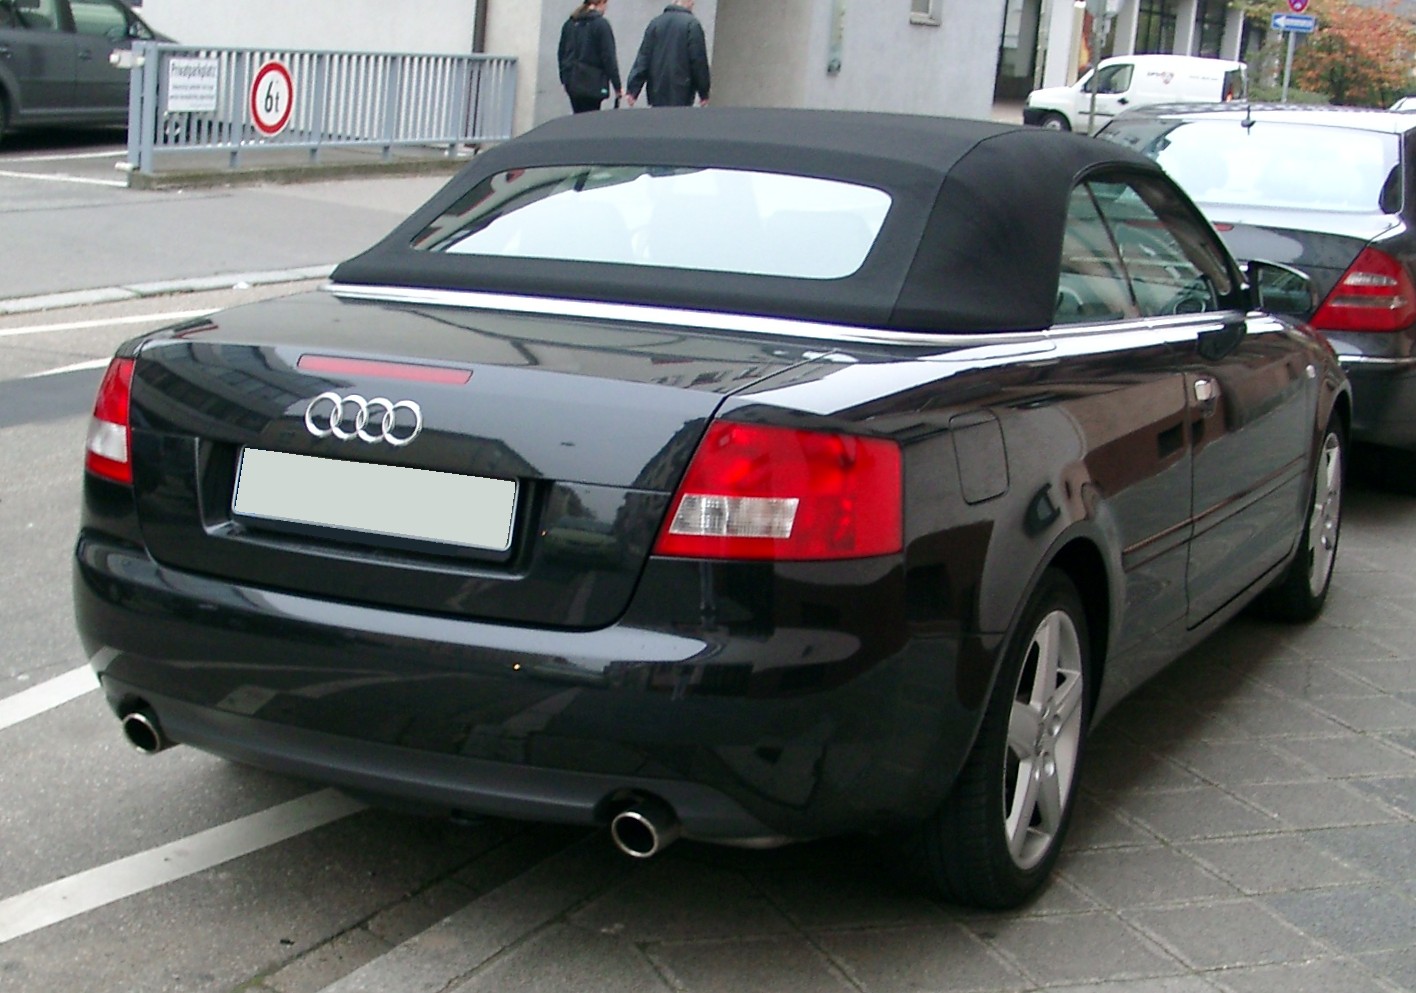 Audi_A4_B6_Cabrio_rear_20071102.jpg